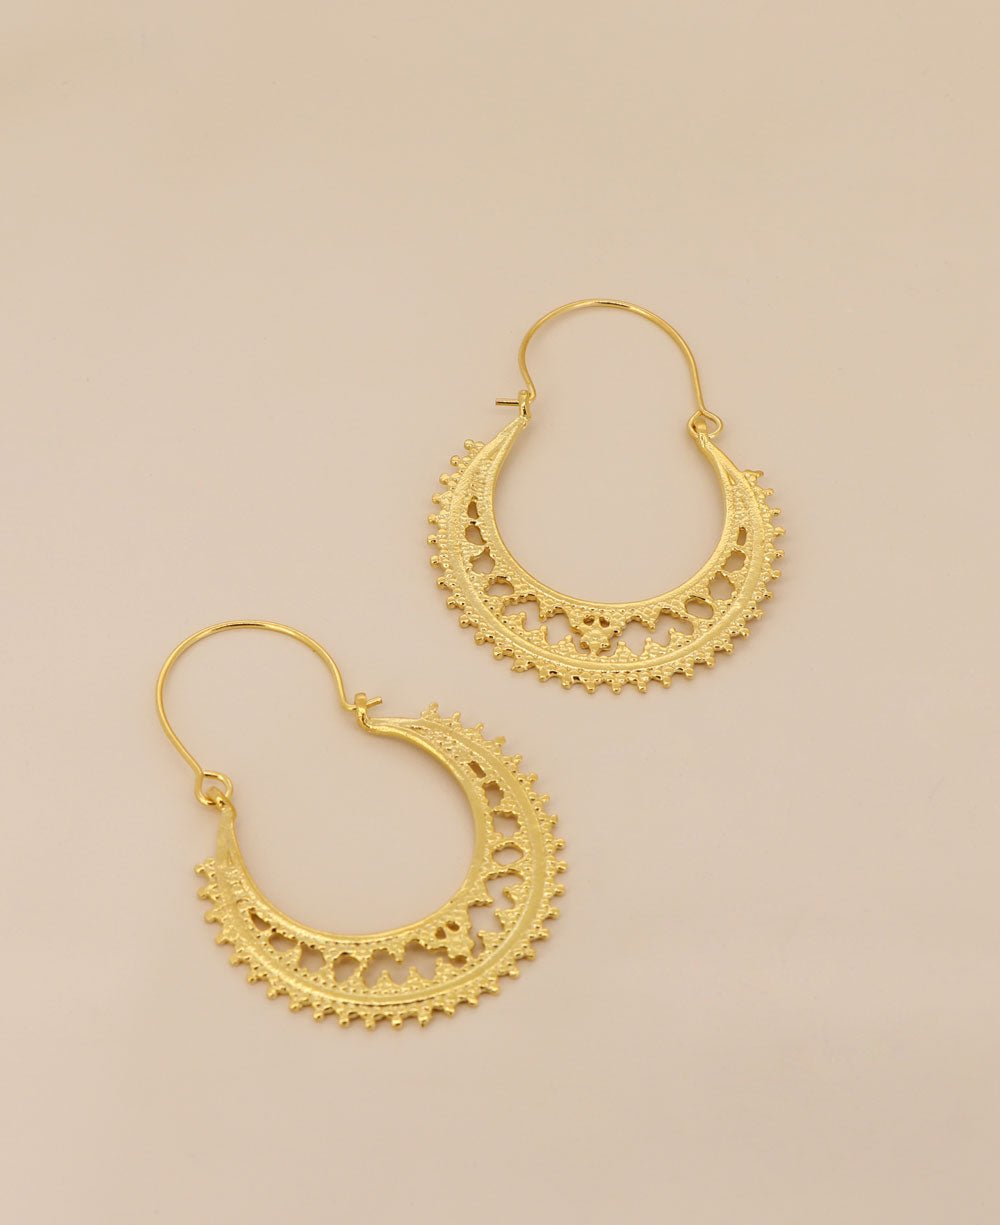 Mandala Design Hoop Earrings - Earrings